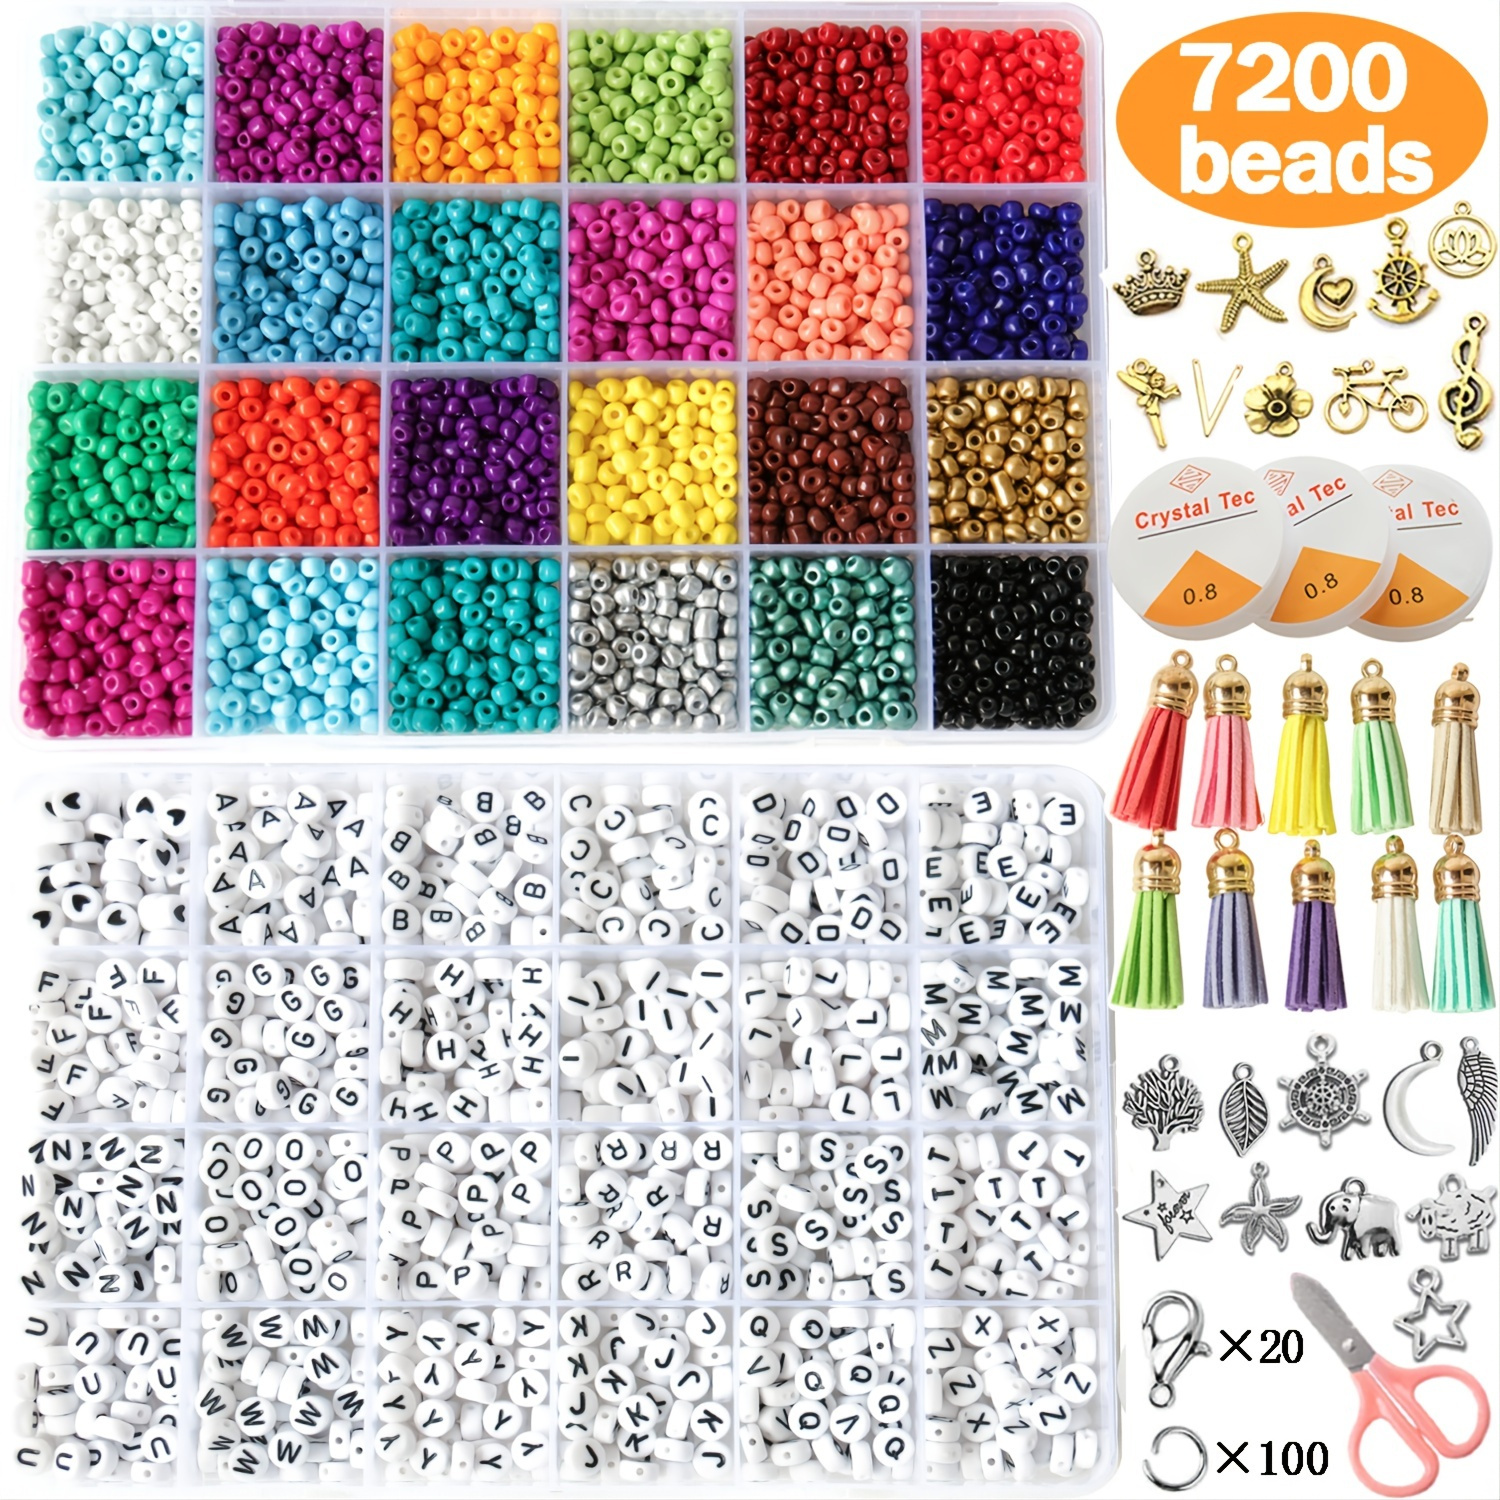 8400pcs Glass Seed Beads for Bracelets Making Kit Alphabet Letter